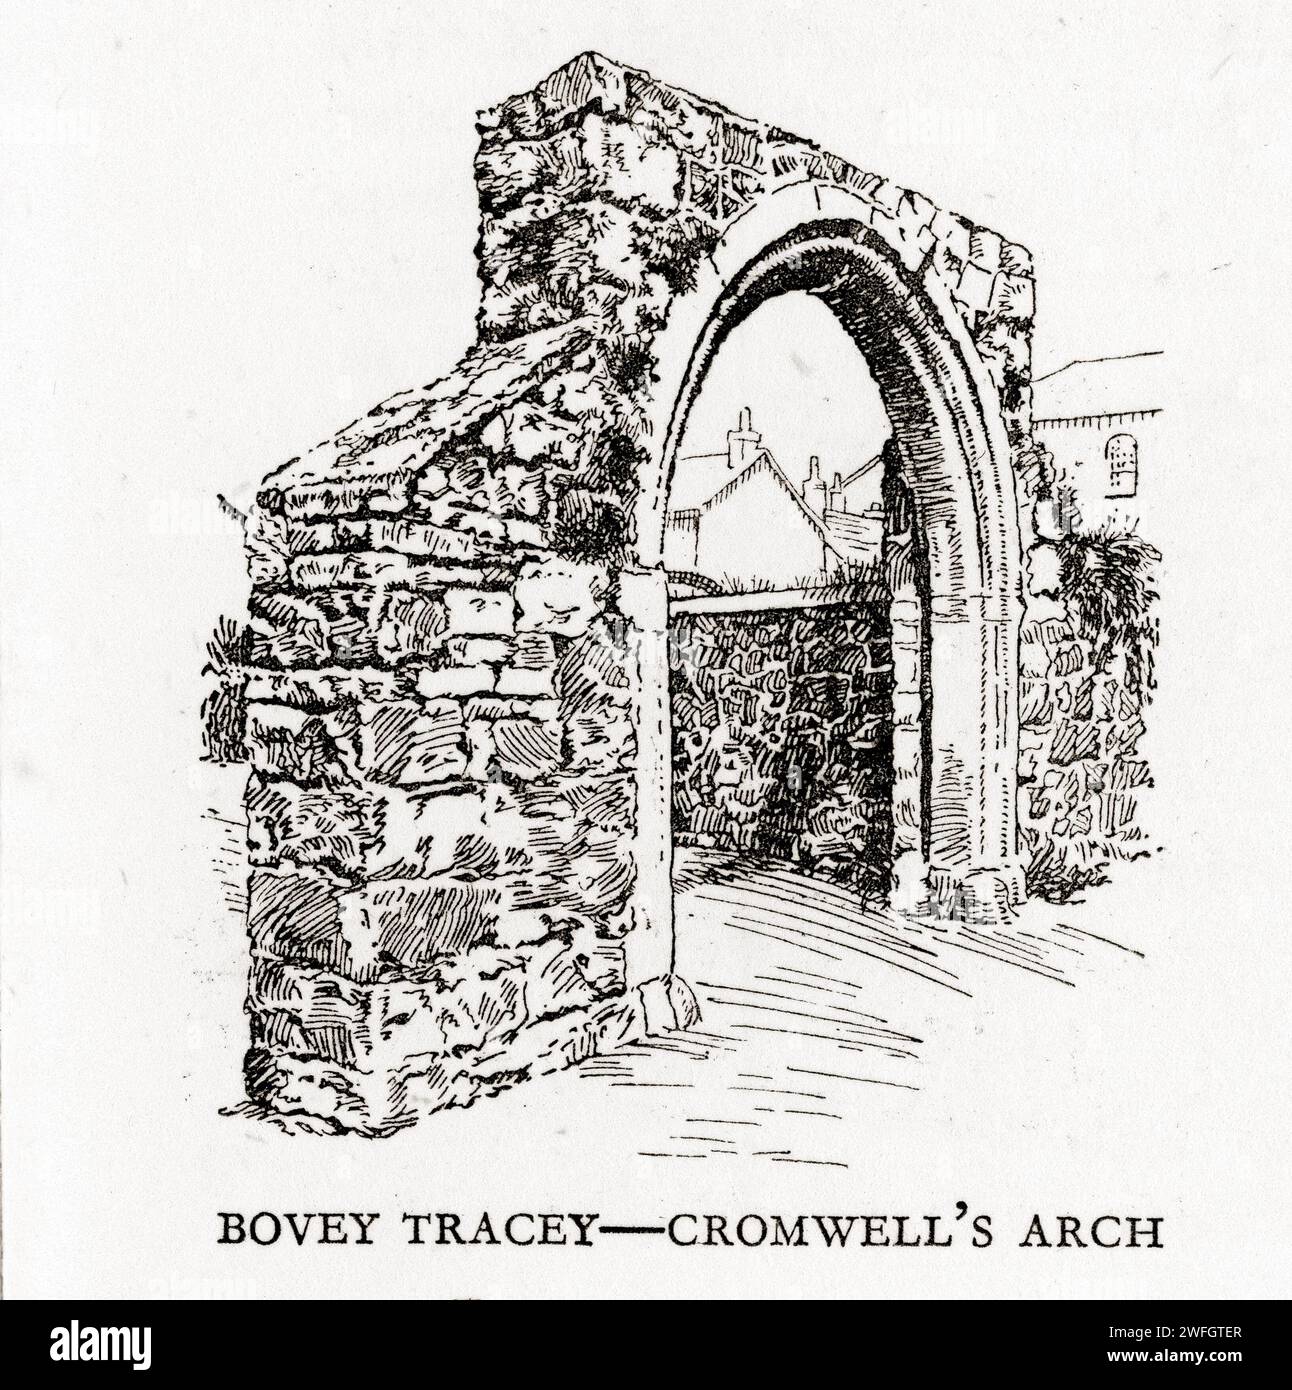 Schizzo a penna e inchiostro - Cromwell's Arch, Bovey Tracey, Devon. Illustrazione dal libro Glorious Devon, di S.P.B. Mais, pubblicato da London Great Western Railway Company, 1928 Foto Stock